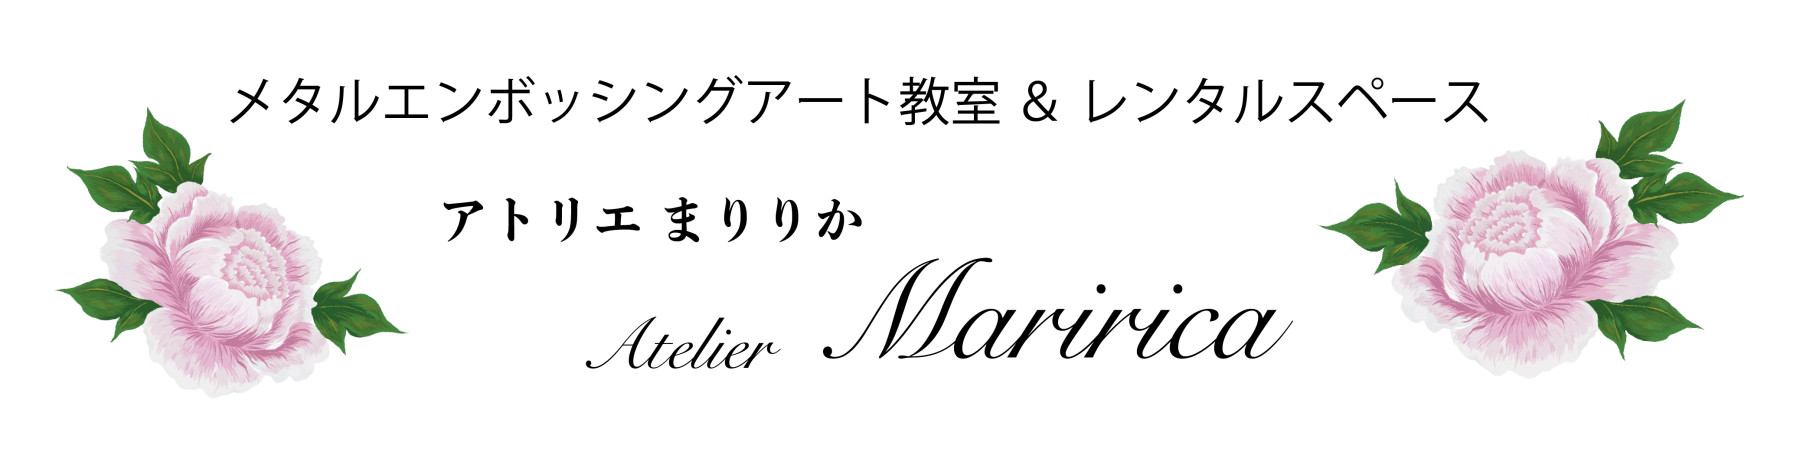 メタルエンボッシングアート教室＆レンタルスペース
Atelier Maririca